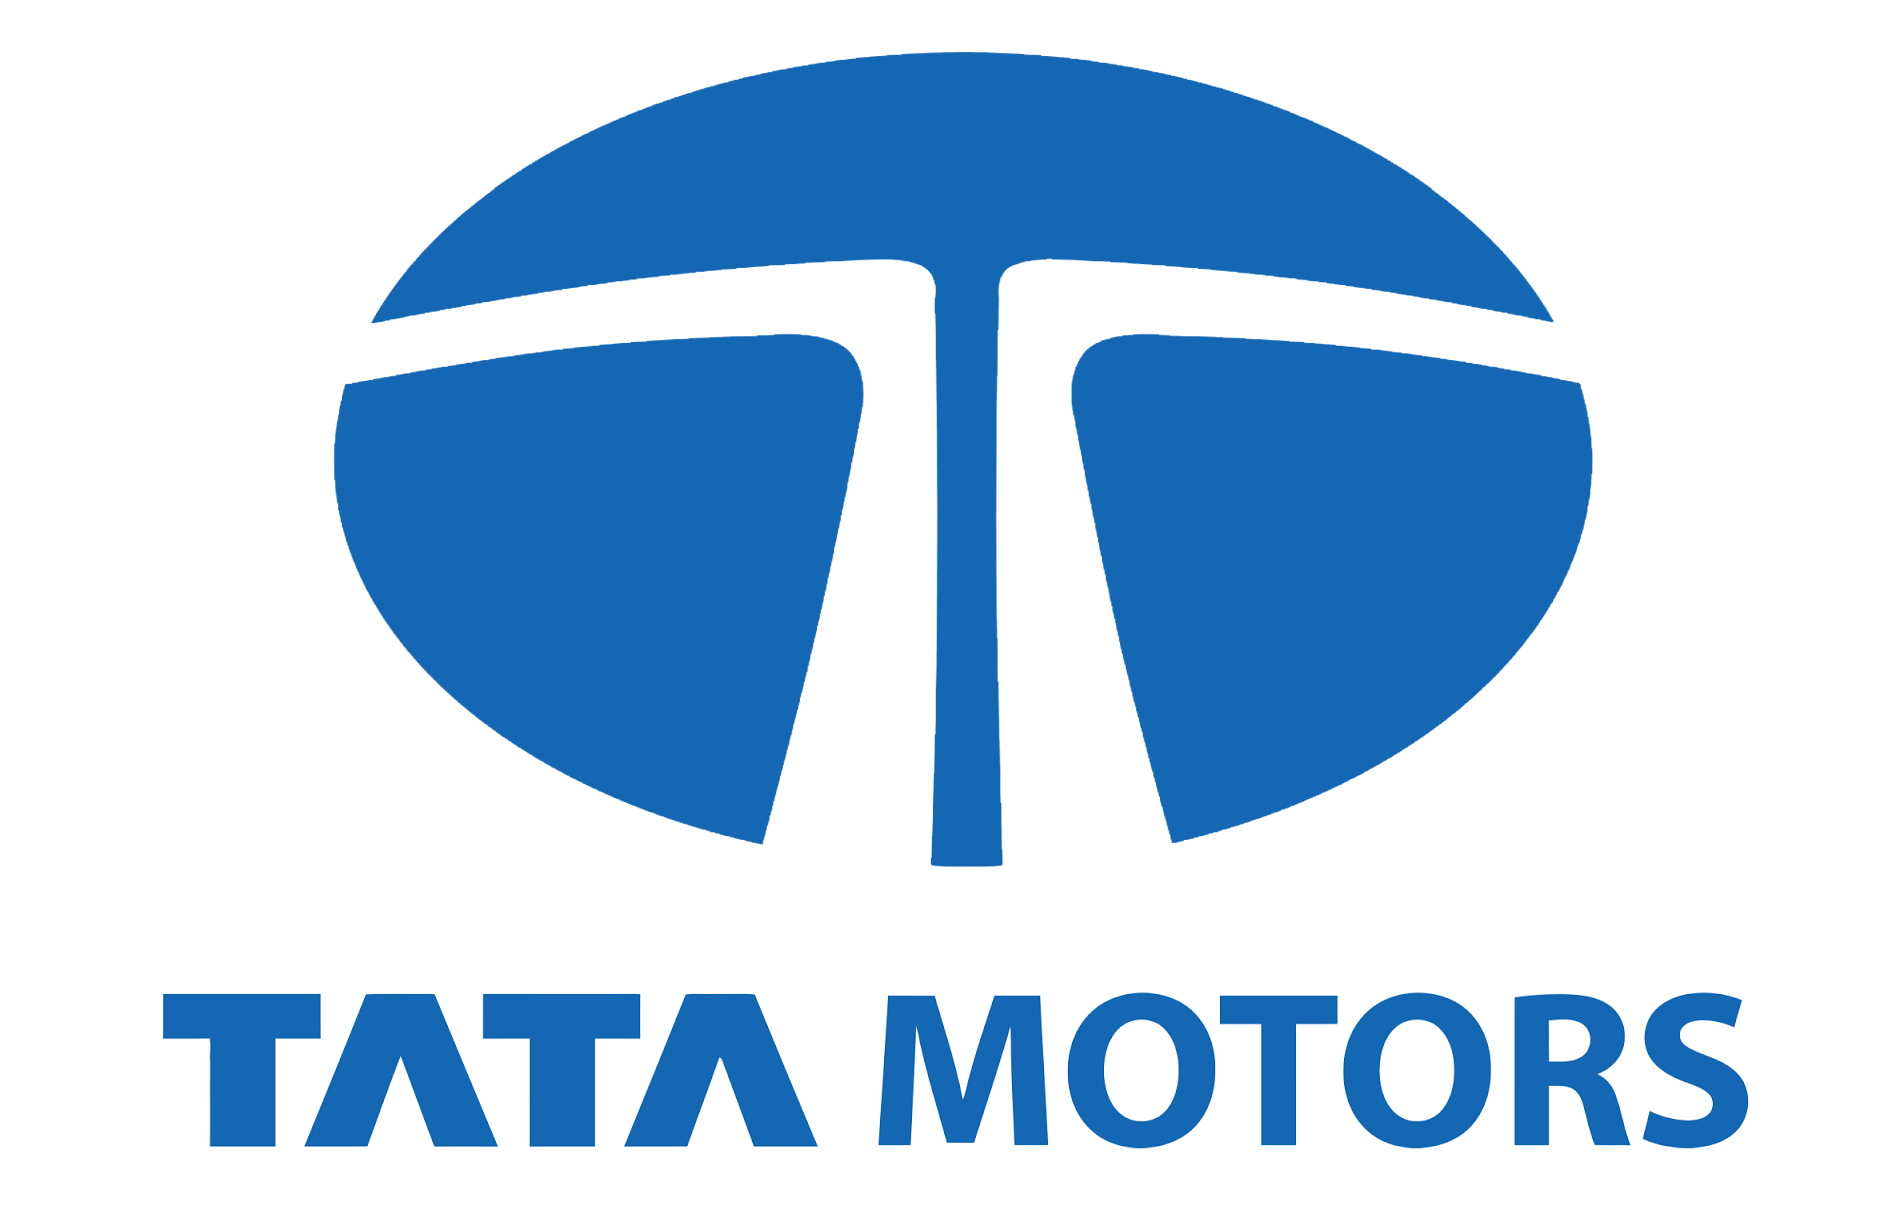 Tata Motors Cars Showroom - Fortune Cars Logo